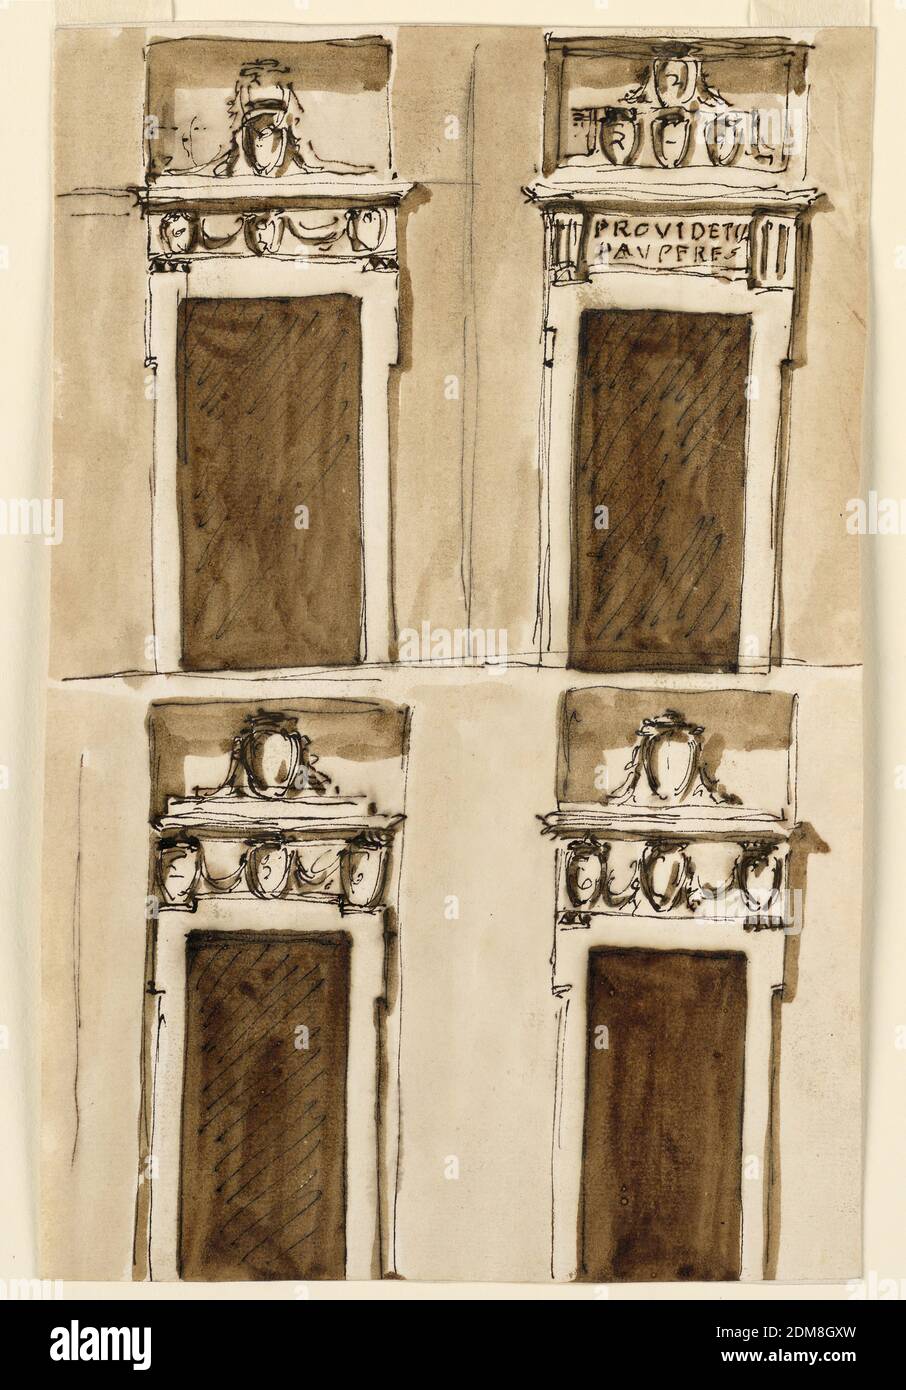 Vier Projekte für eine Tür, Giuseppe Barberi, italienisch, 1746–1809, Feder und braune Tinte, Pinsel und braune Wäsche auf cremefarbenem Papier, gefüttert, zweireihig. Die Designs oben links und unten Reihe sind Variation des Designs -1658. Oben rechts. Ähnlich wie -1730; die Inschrift lautet: PROVIDET. / PAVPERES“. Die vier Wandteppiche sind in der Nische oben abgebildet. Farbiger Hintergrund., Rom, Italien, ca. 1790, Architektur, Zeichnung Stockfoto